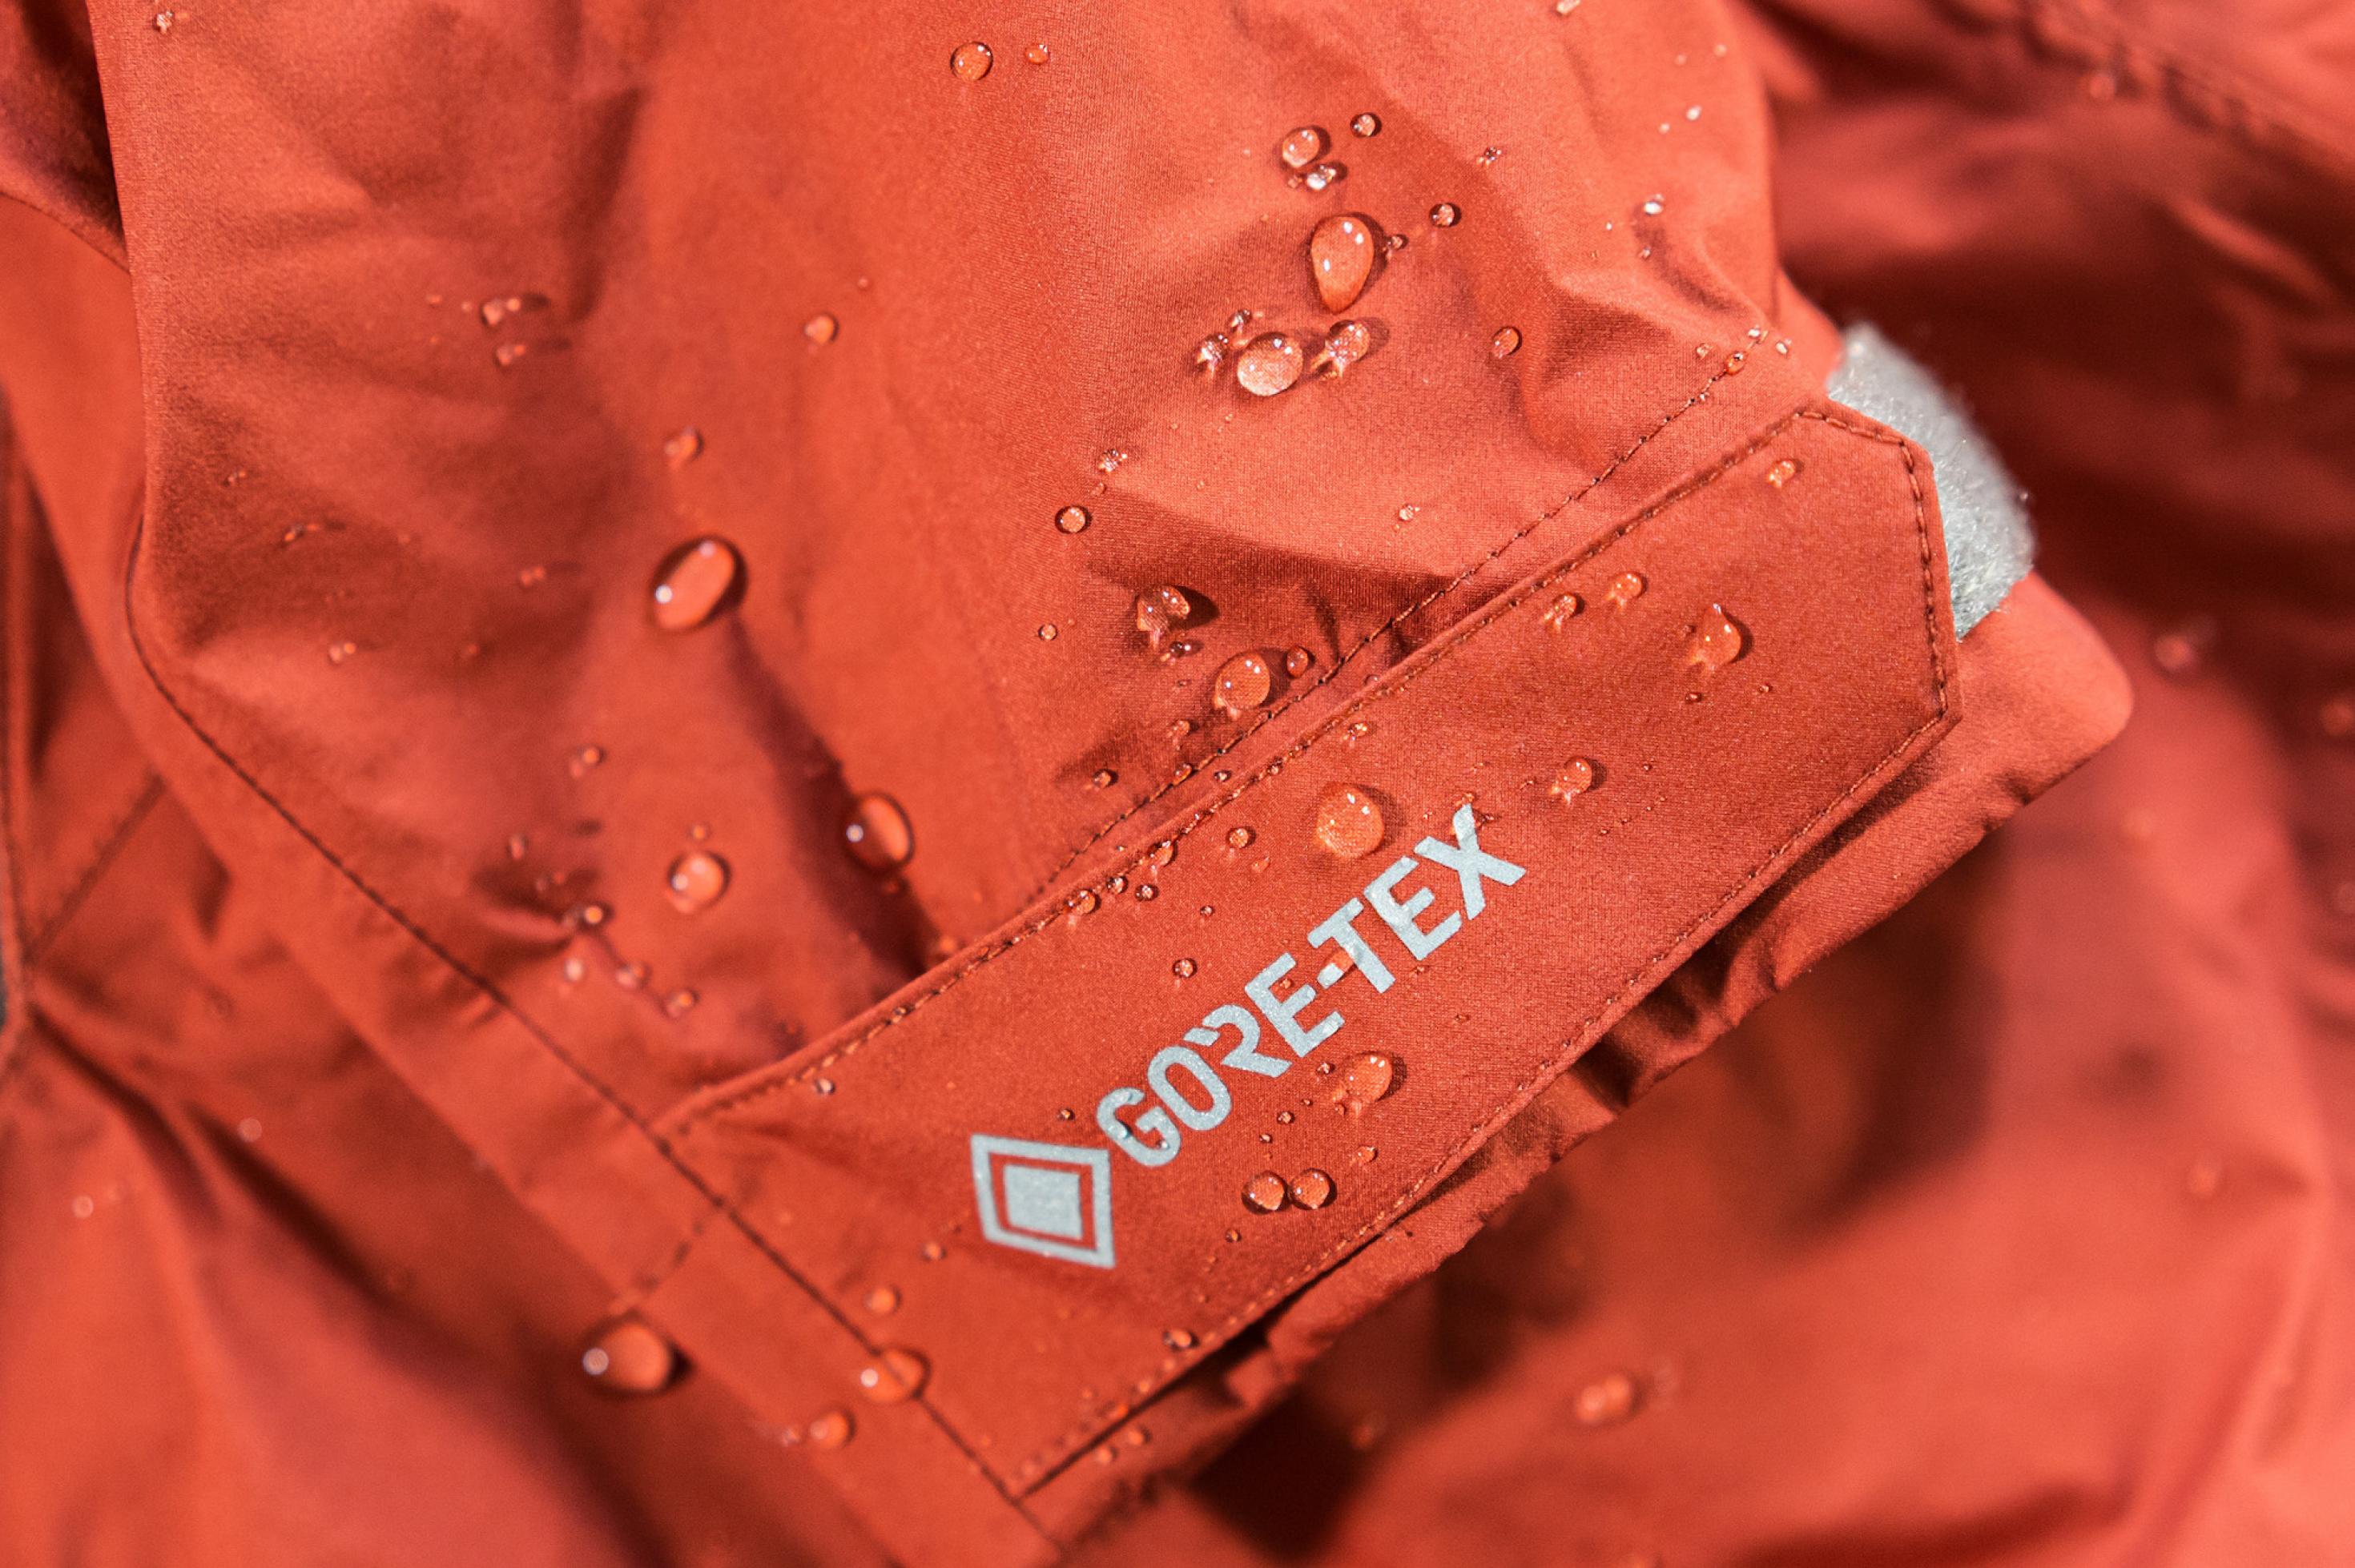 Ausschnitt einer orange-roten Outdoor-Jacke mit abperlenden Wassertropfen